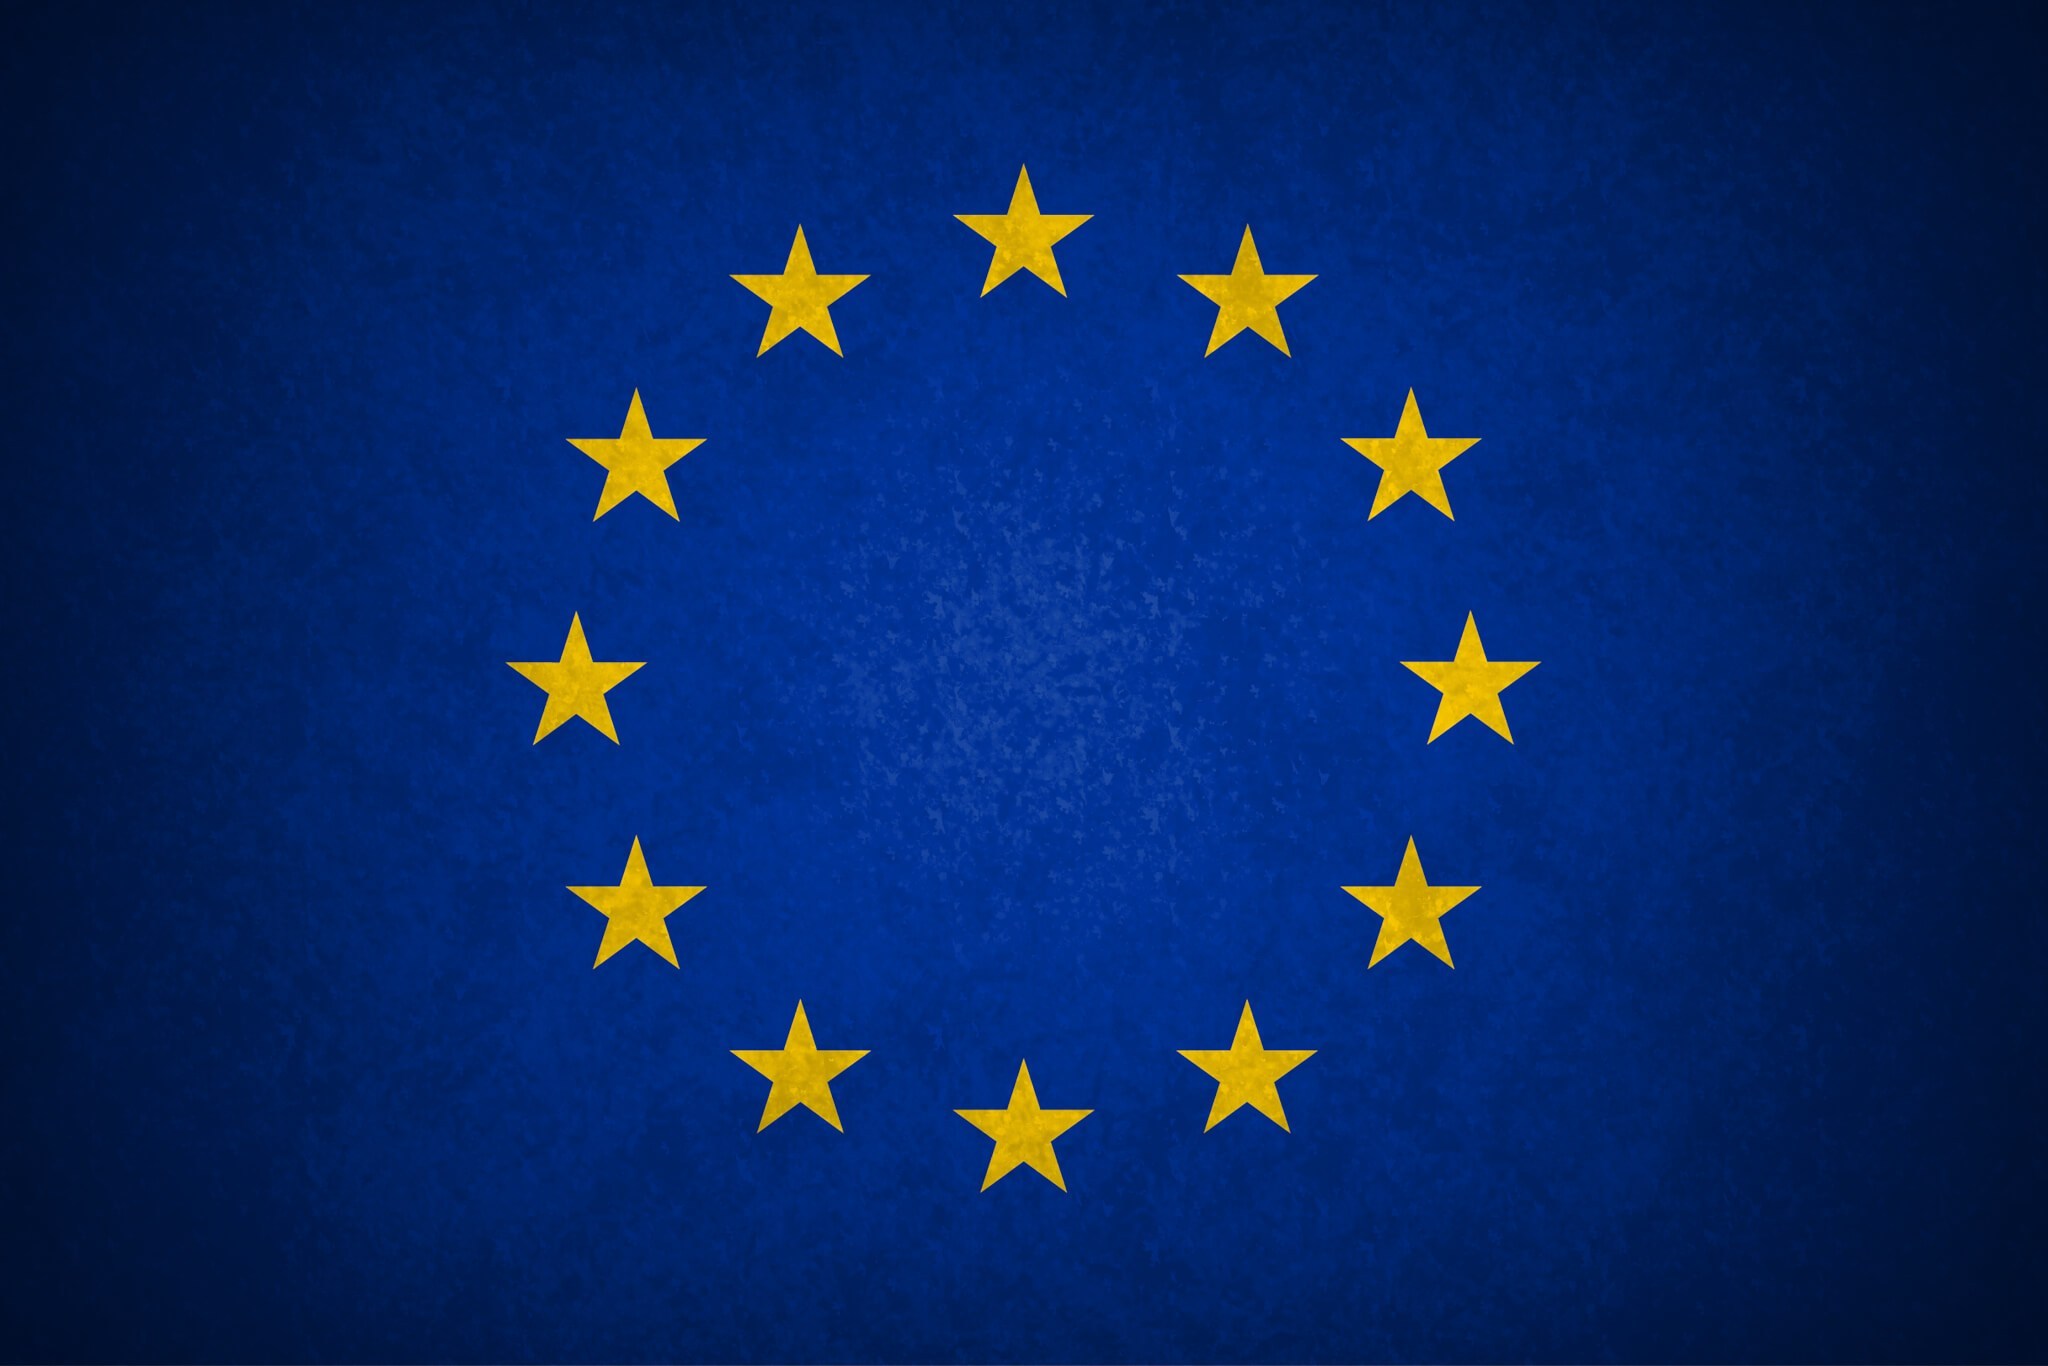 Unión Europea